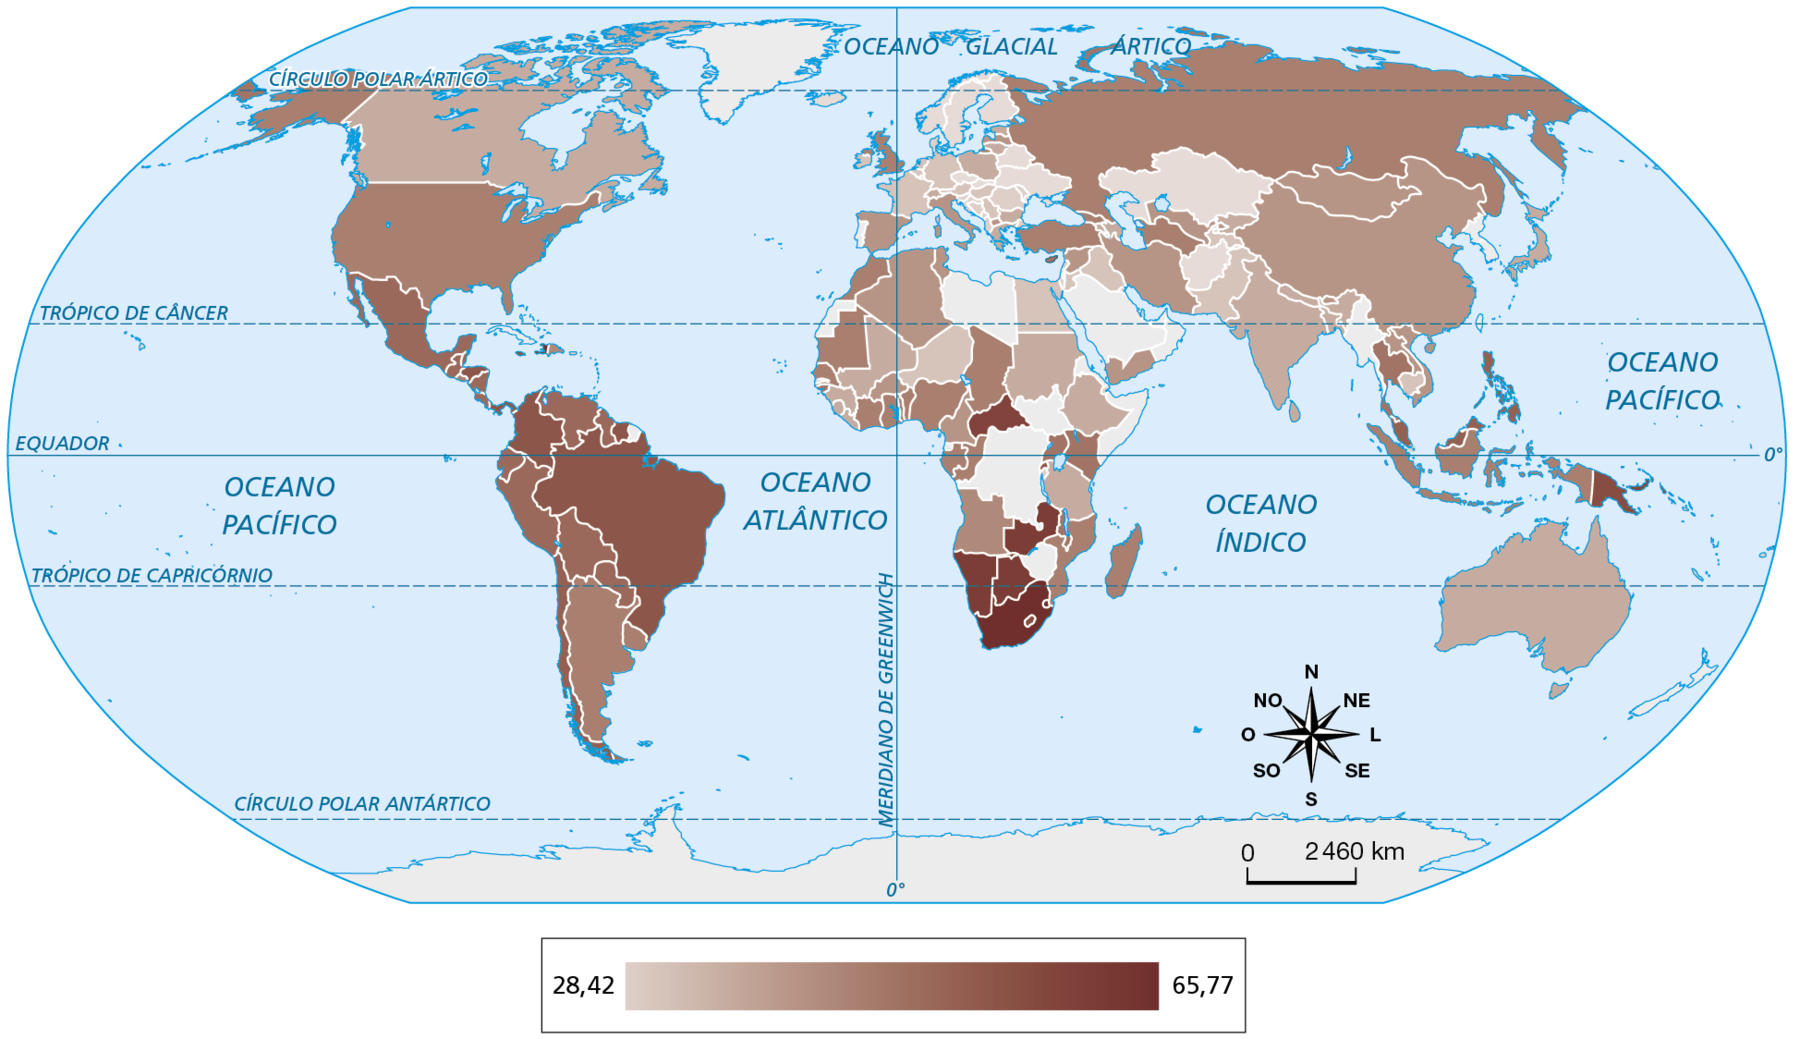 Mapa. Planisfério: Gini (início do século vinte e um). 
Planisfério mostrando o índice de Gini dos países, em uma escala de 28,4 a 65,77.
Países com índices próximos a 28,42: Suécia, Noruega, Finlândia, Ucrânia, Belarus, Romênia, República Tcheca, Cazaquistão, Mianmar, Afeganistão.
Países com índices próximos a 65,77: destaque para África do Sul, Namíbia, Botsuana, Zâmbia, Zimbábue e República Centro-Africana, seguidos de países como Brasil, México, Estados Unidos,  Rússia, Colômbia, Peru. 
Na parte inferior, a rosa dos ventos e escala de 0 a 2.460 quilômetros.